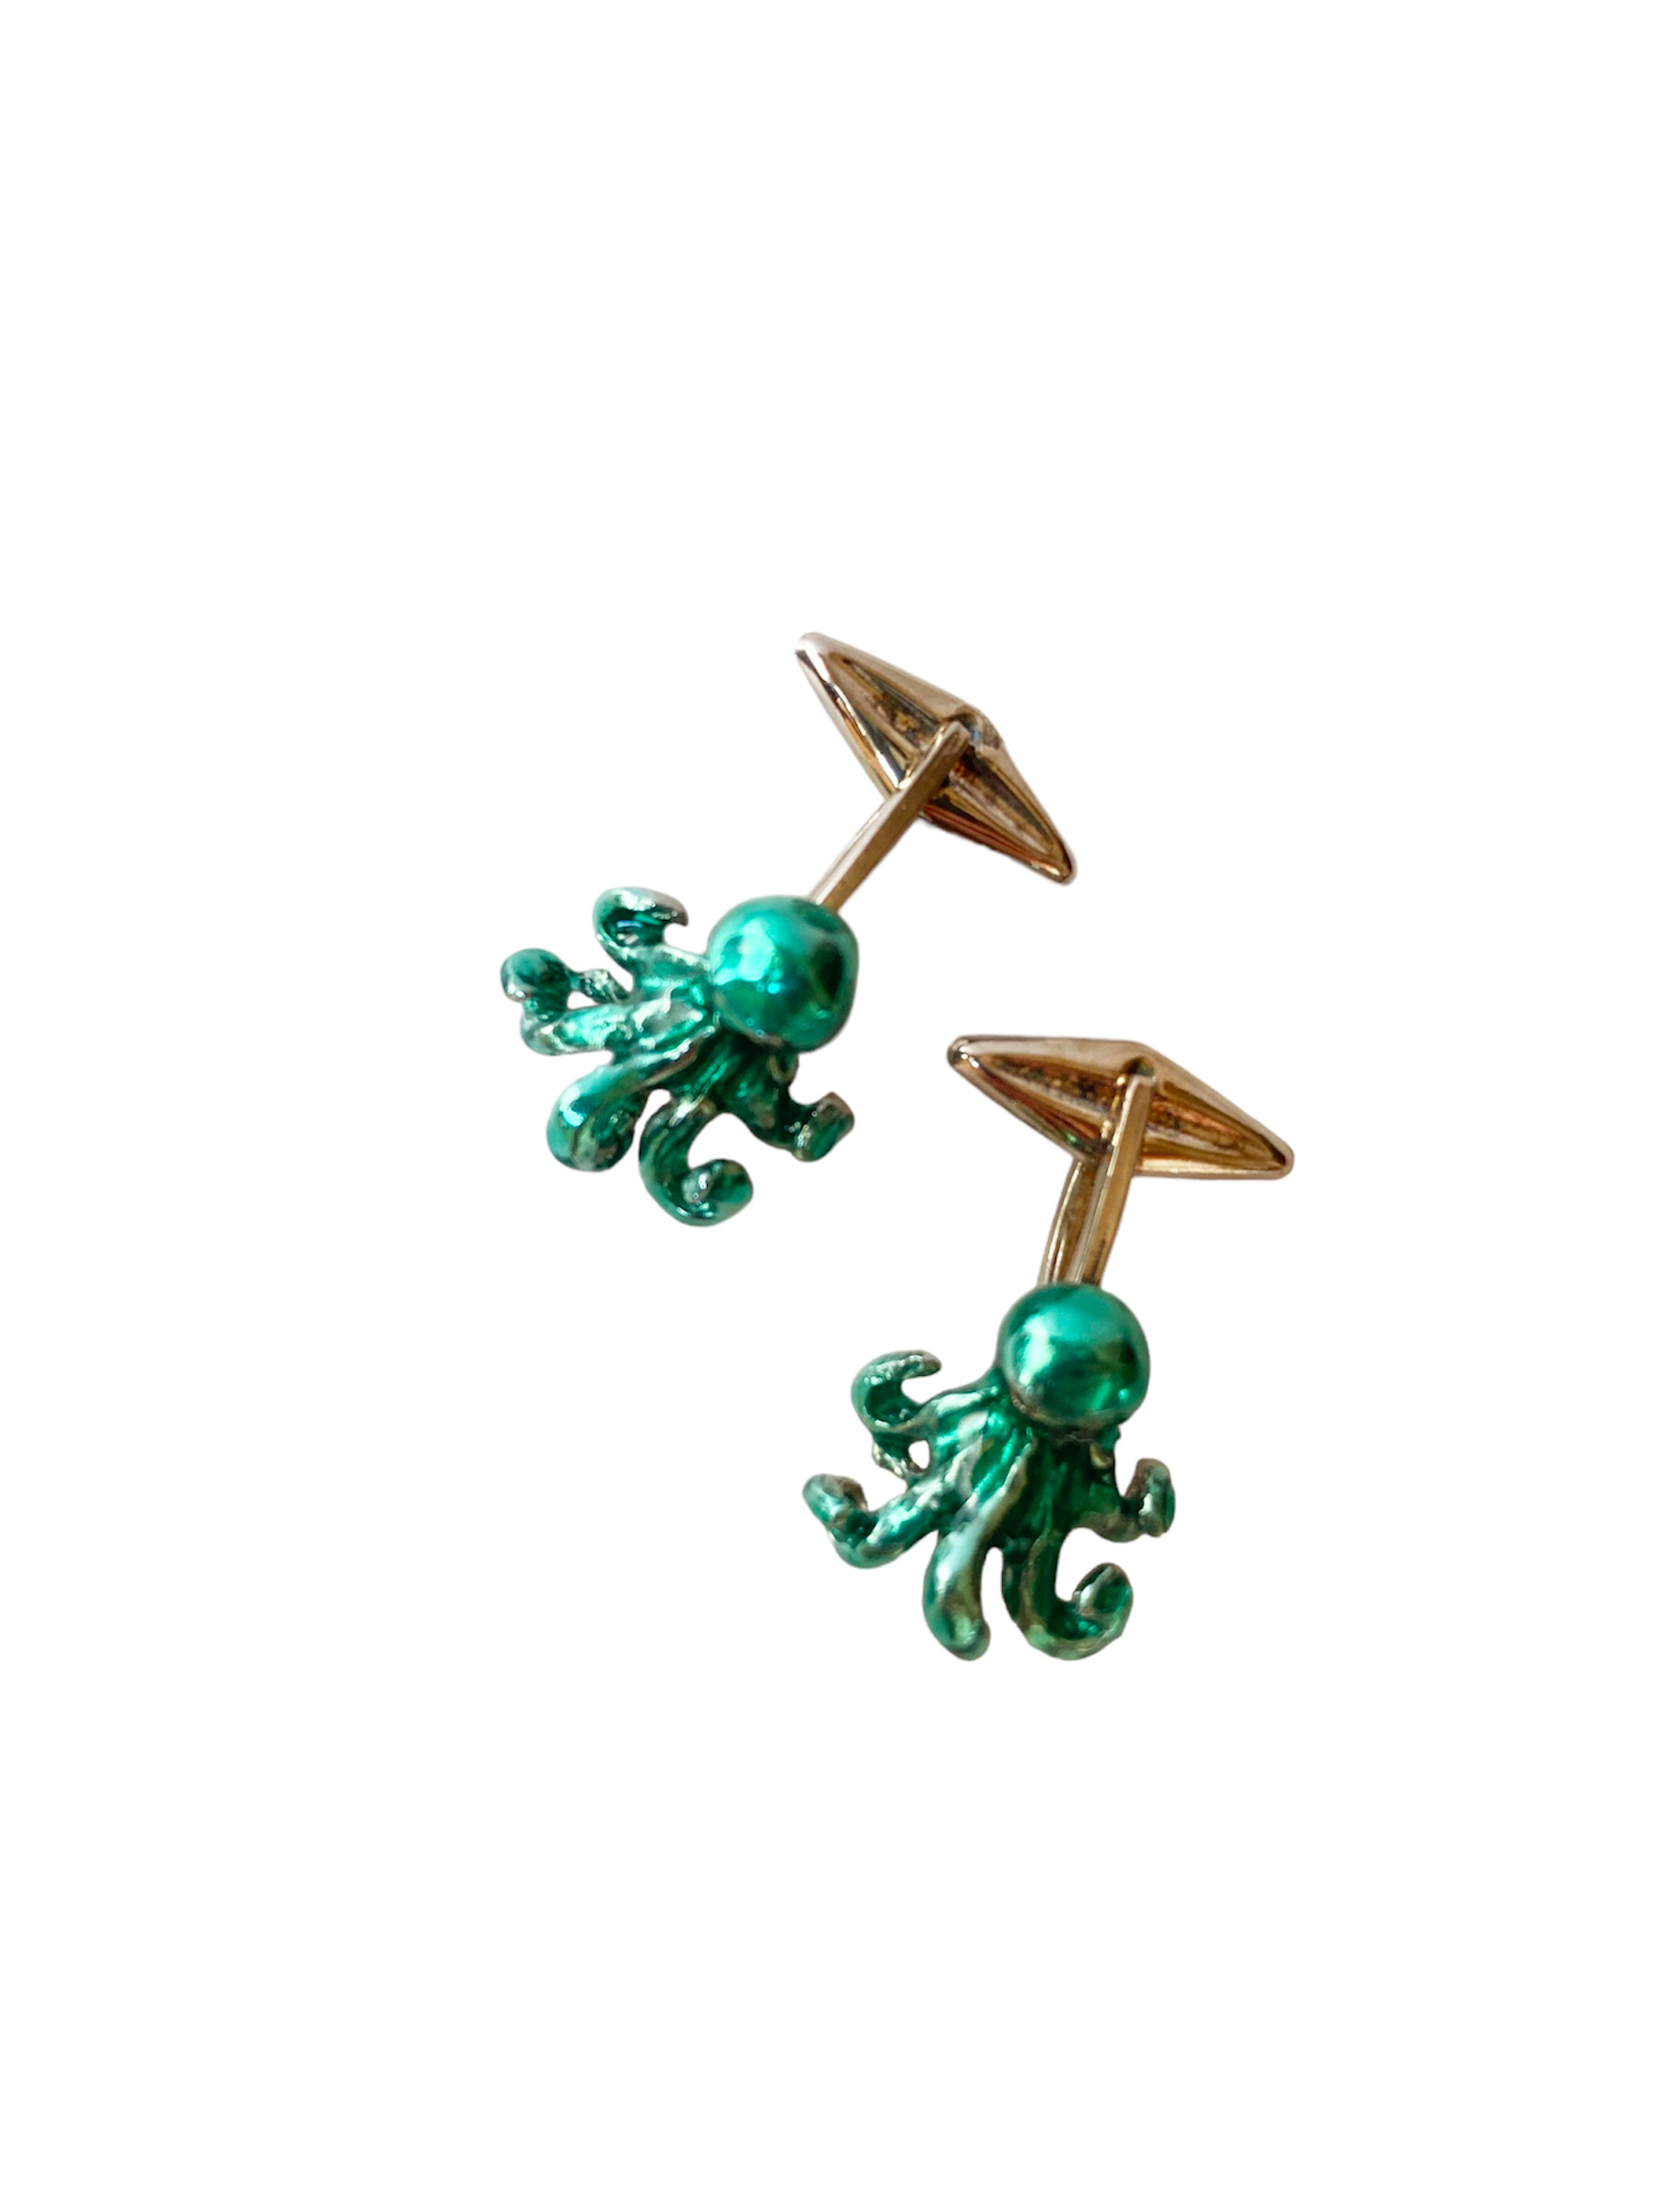 Élevez votre style avec les boutons de manchette Rossella Ugolini Octopus, méticuleusement fabriqués à la main en Italie. Ces boutons de manchette sont l'union de l'art et du symbolisme, un témoignage de l'artisanat.
Contrairement aux produits de